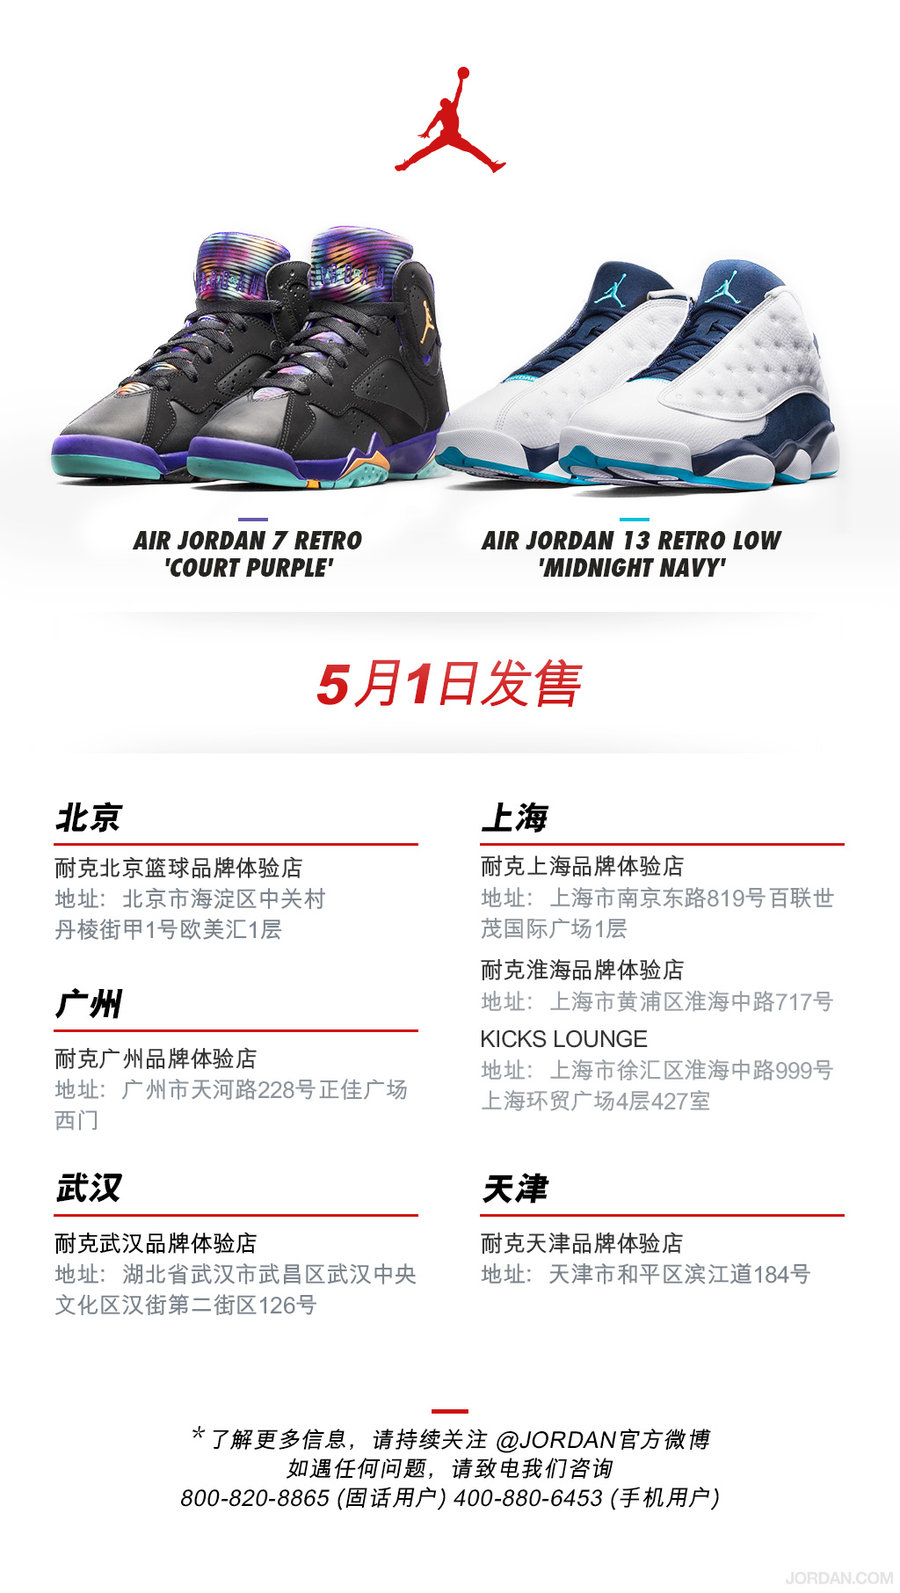 【,重要,】,本周,Air,Jordan,鞋款,在线,发售,  【重要】本周 Air Jordan 鞋款在线发售取消通知